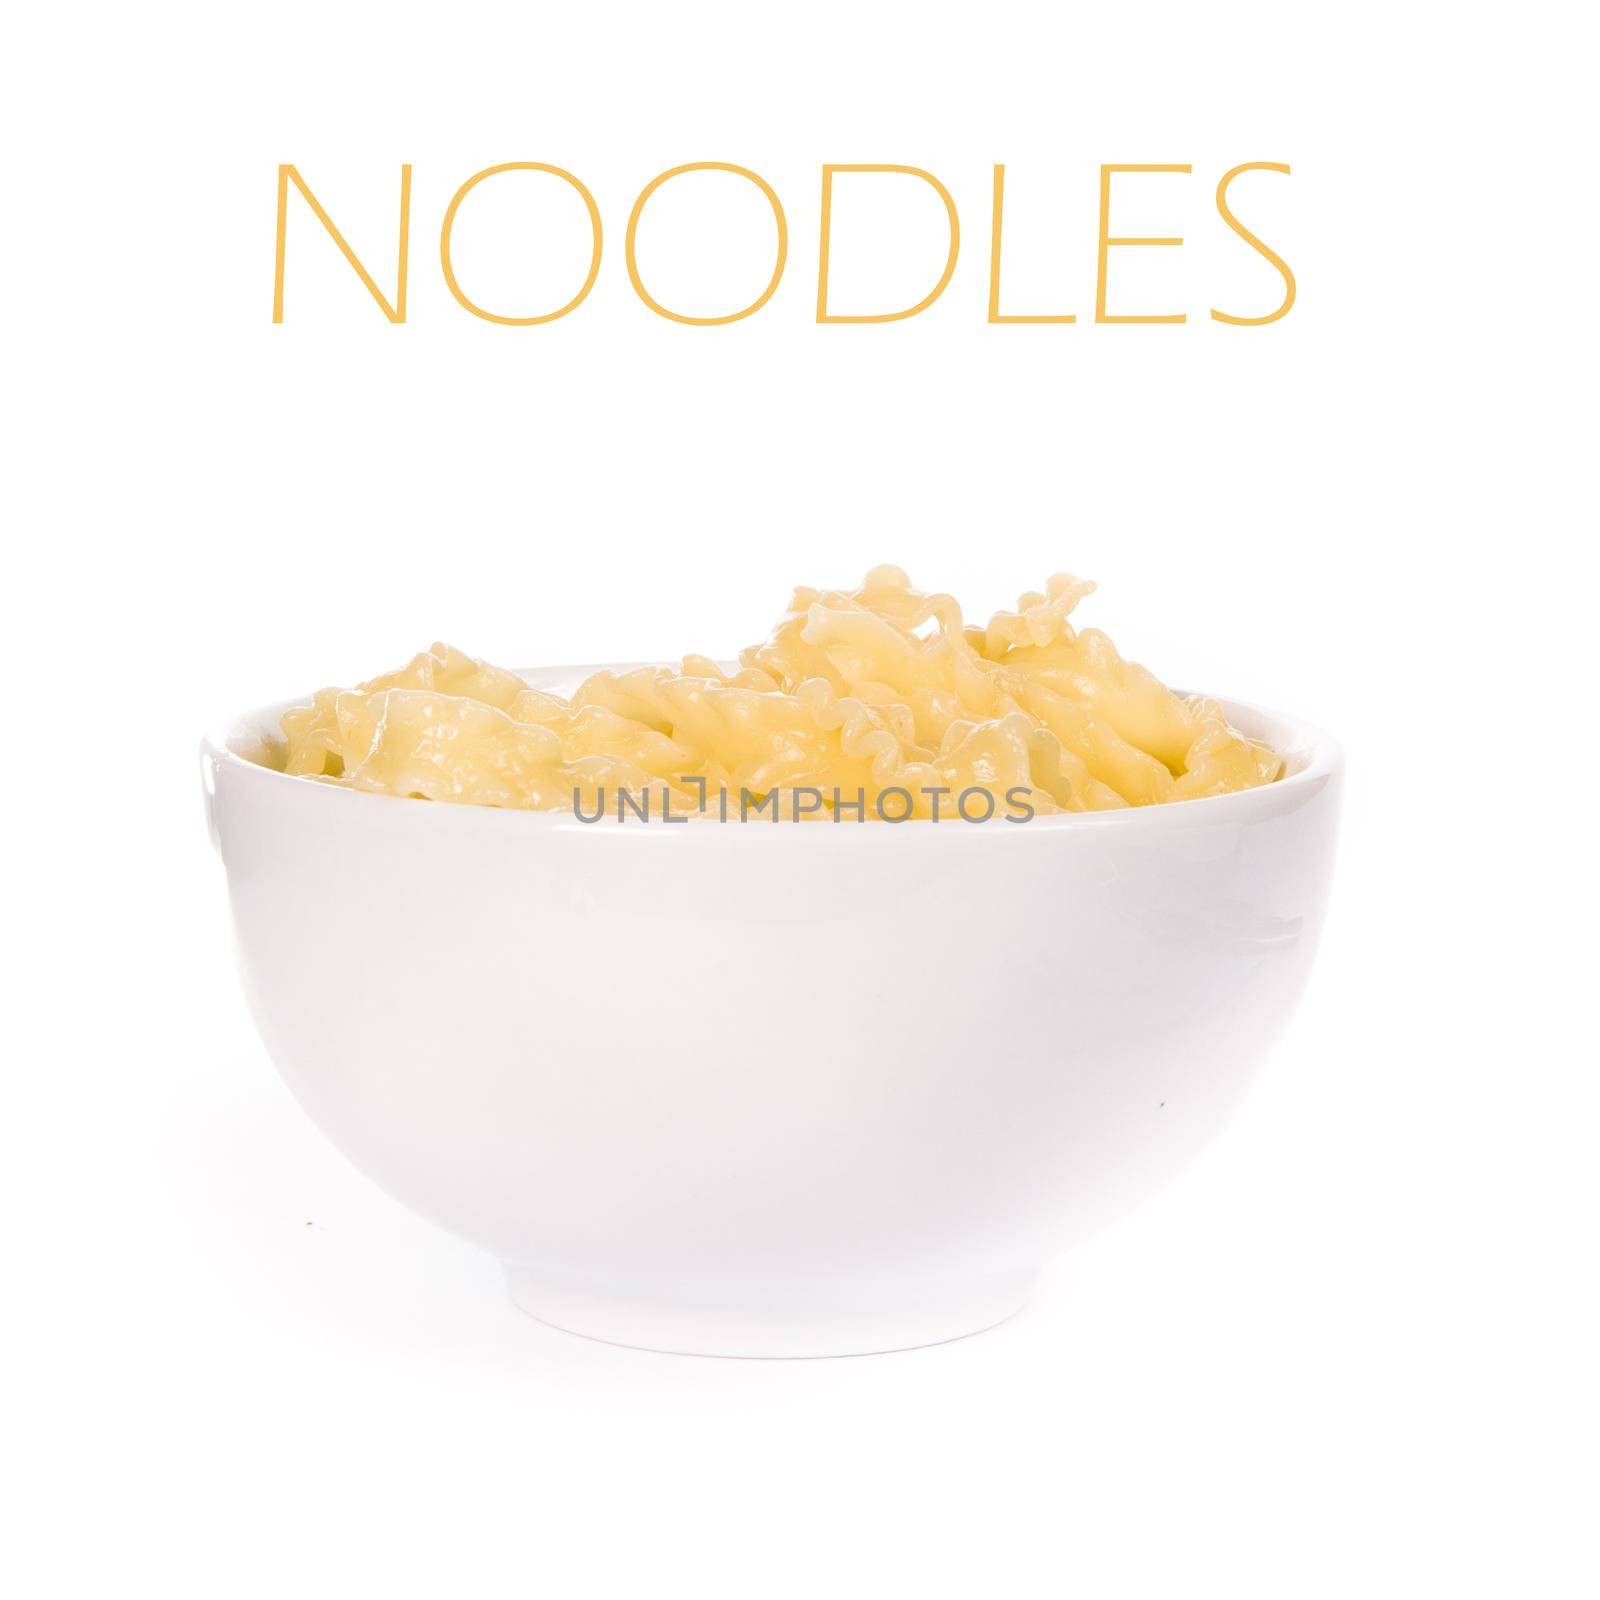 noodle by tan4ikk1